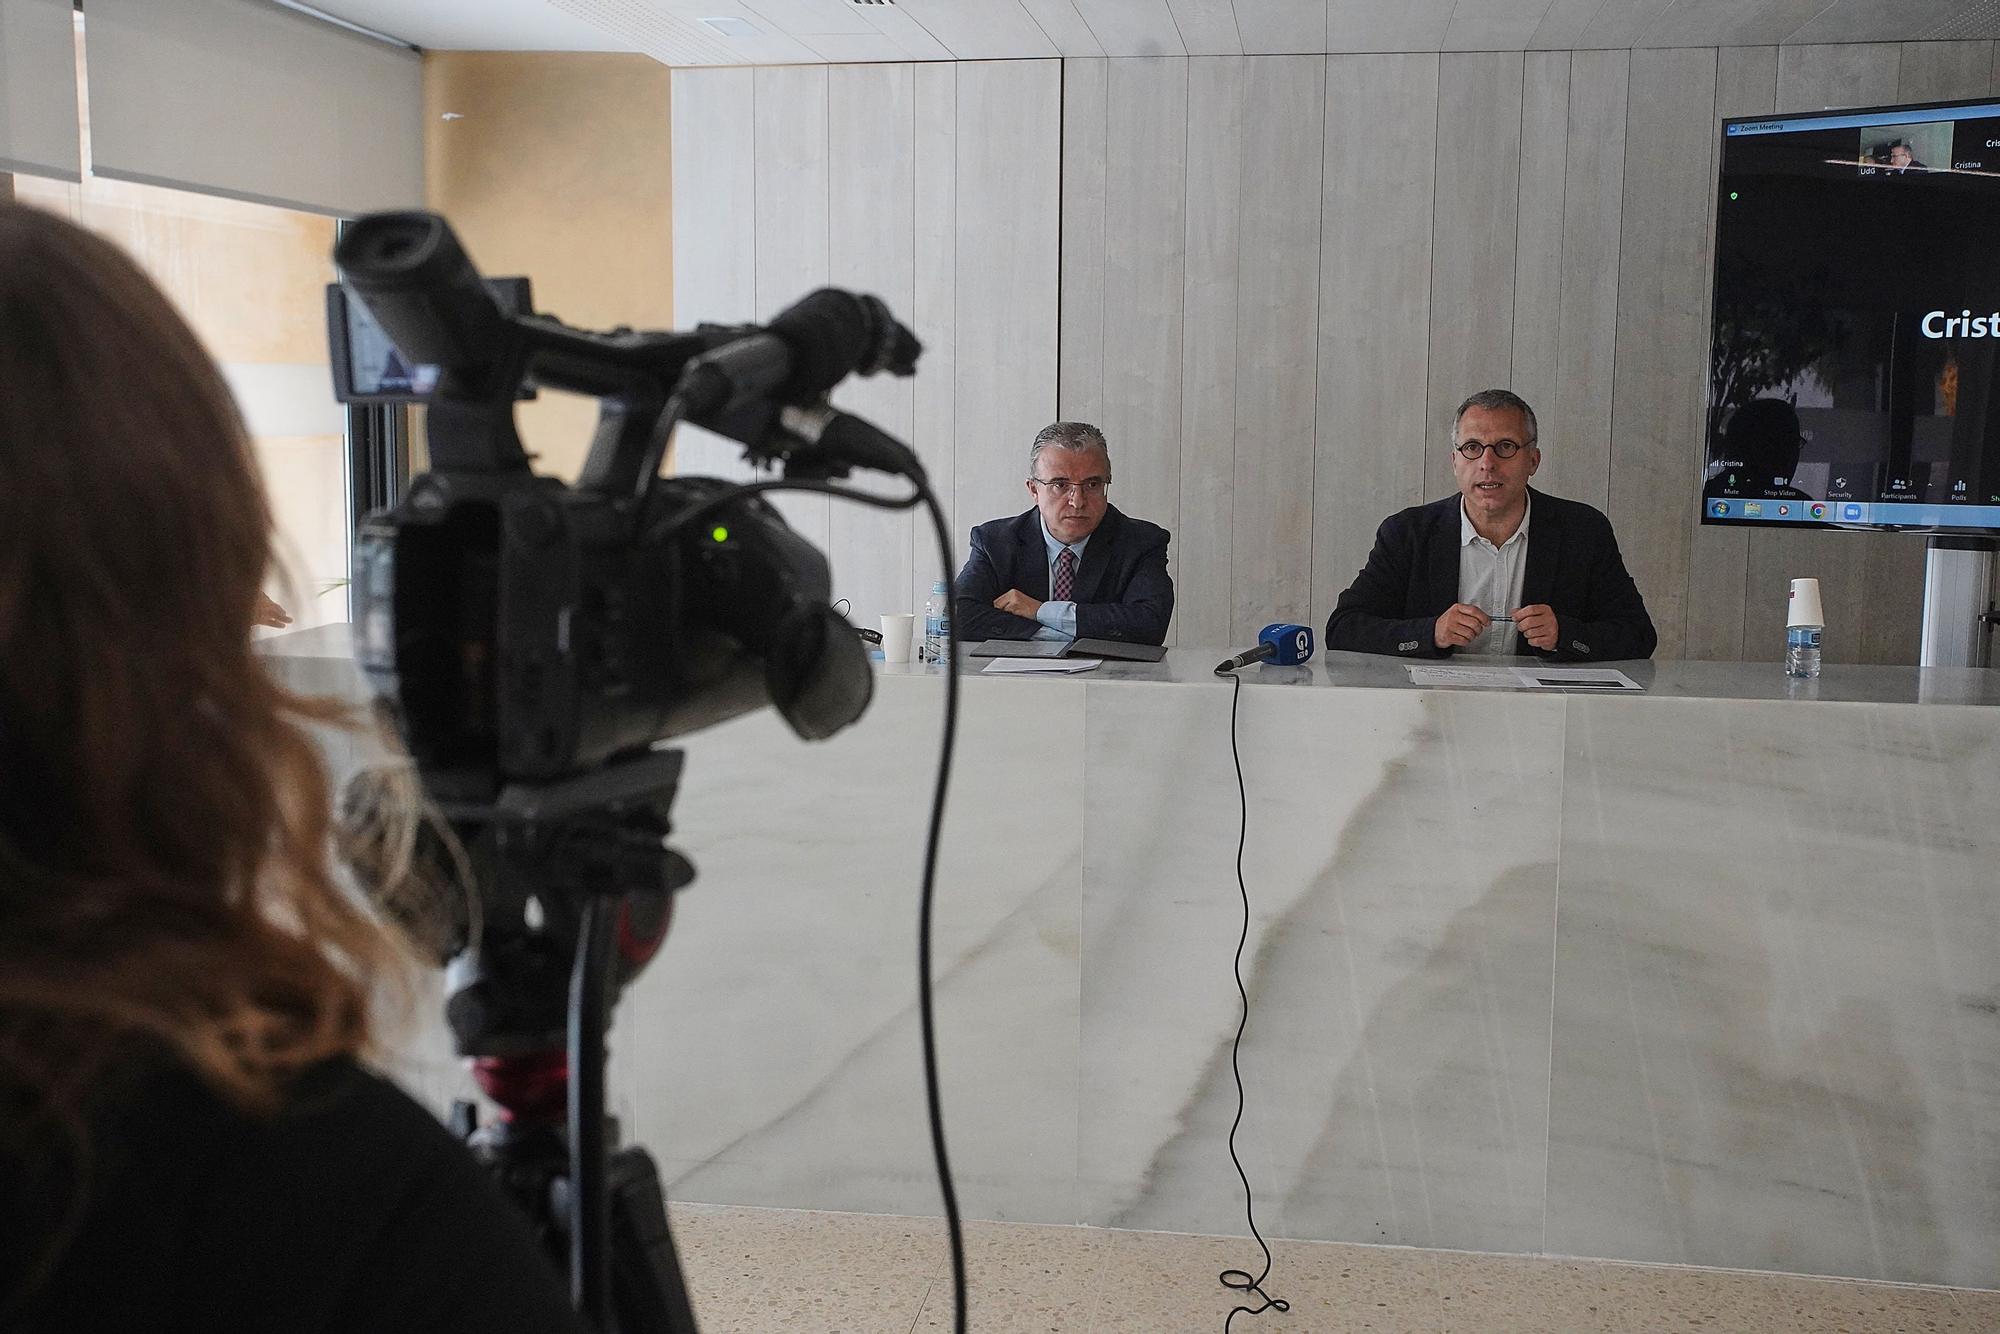 Més de mig miler de juristes debatran sobre raonament probatori a Girona